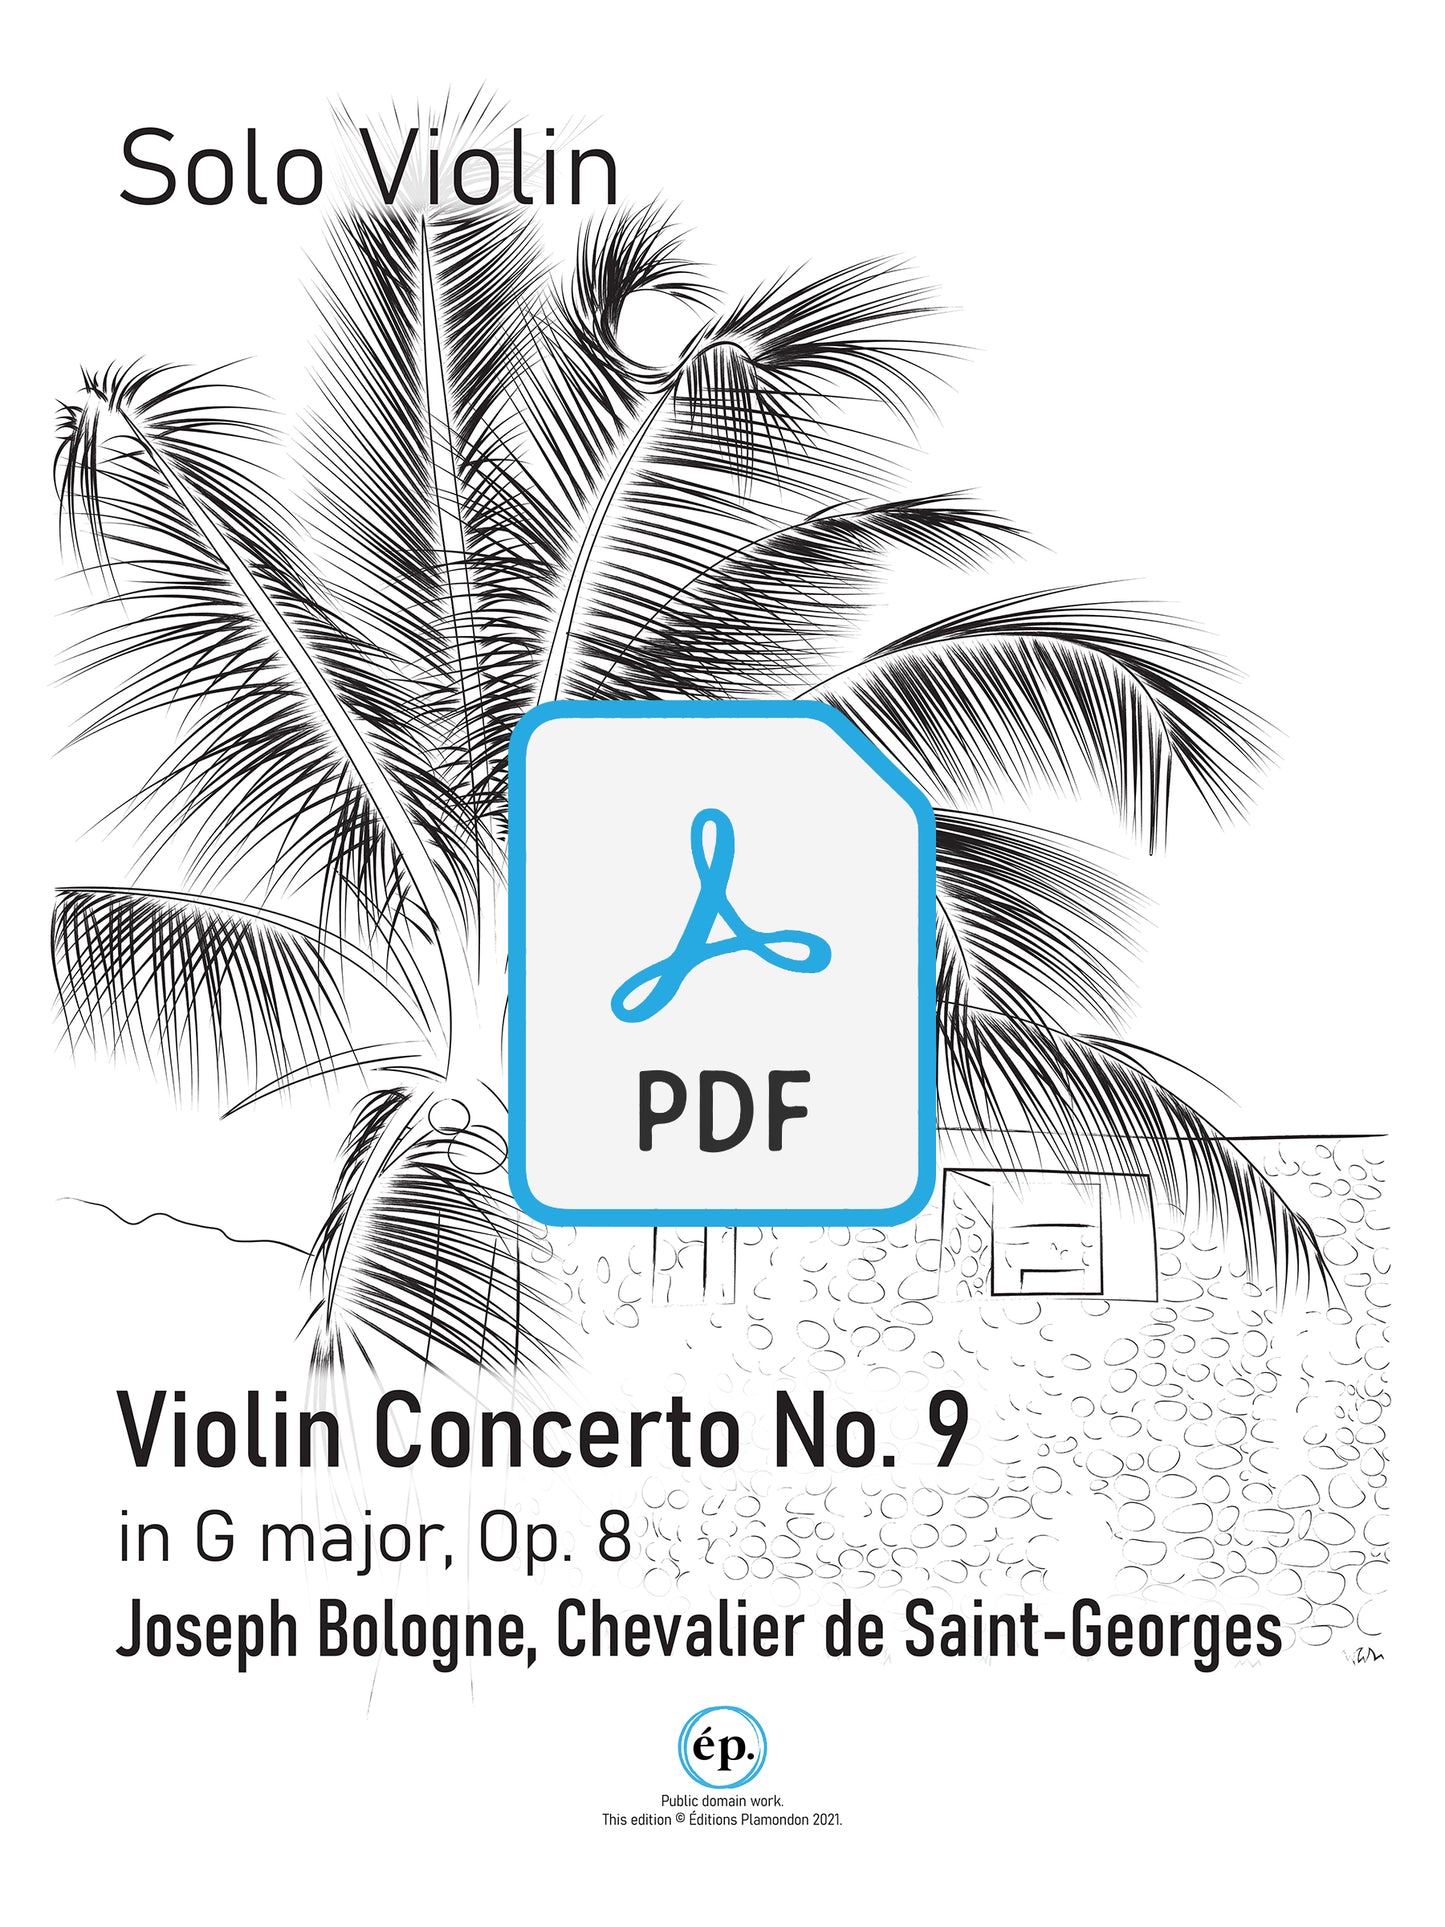 Chevalier de Saint-Georges Violin Concerto No. 9 in G major, op. 8